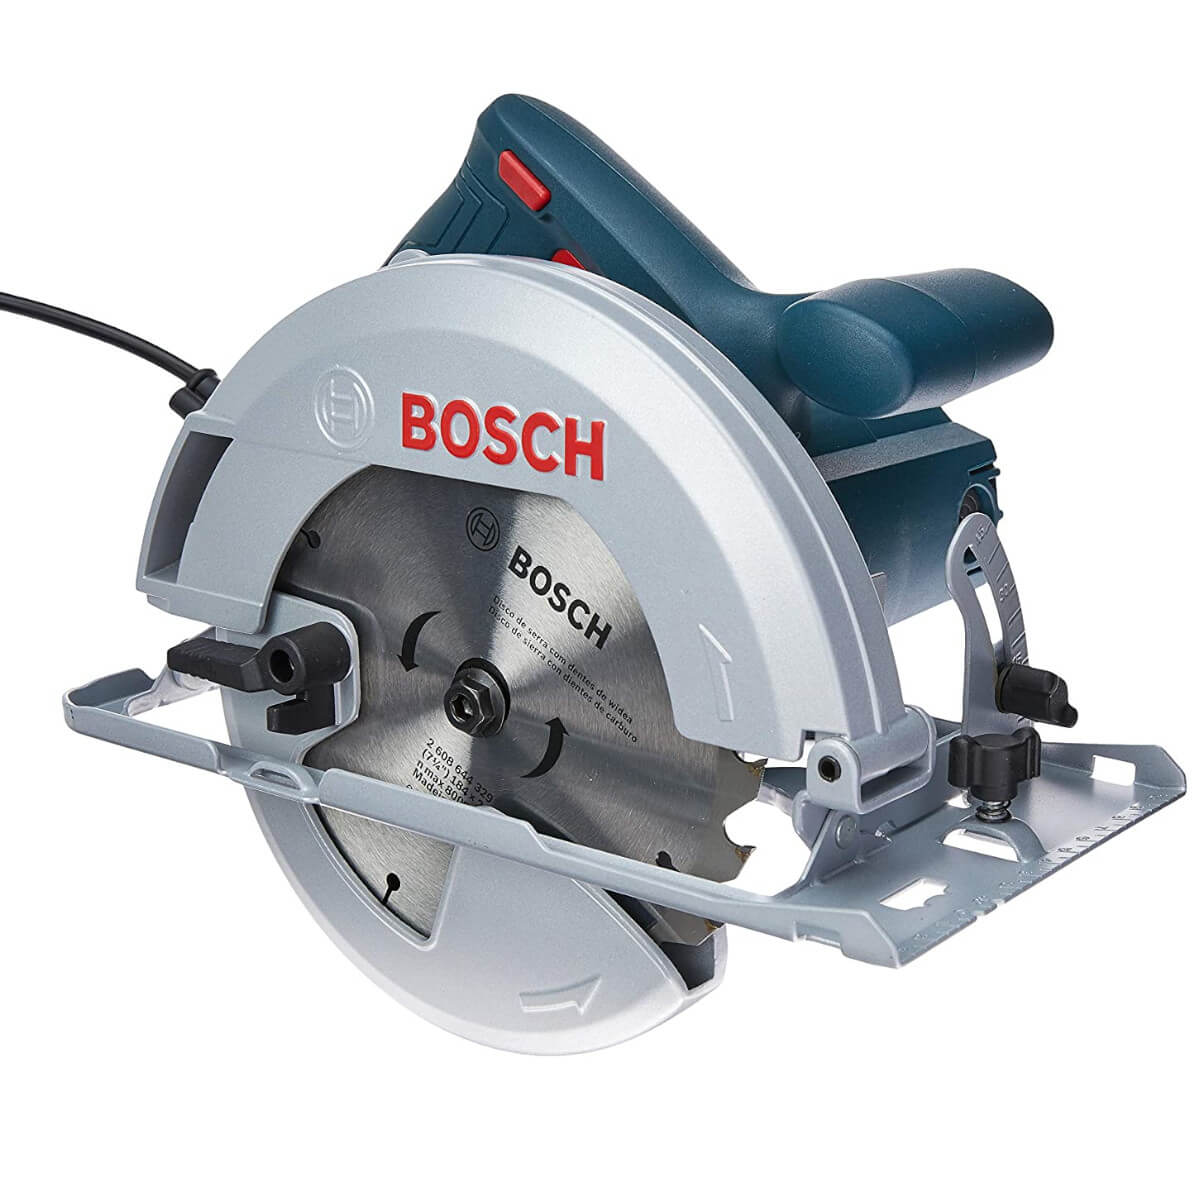 Serra circular elétrica Professional 1500W 220v GKS150 Bosch